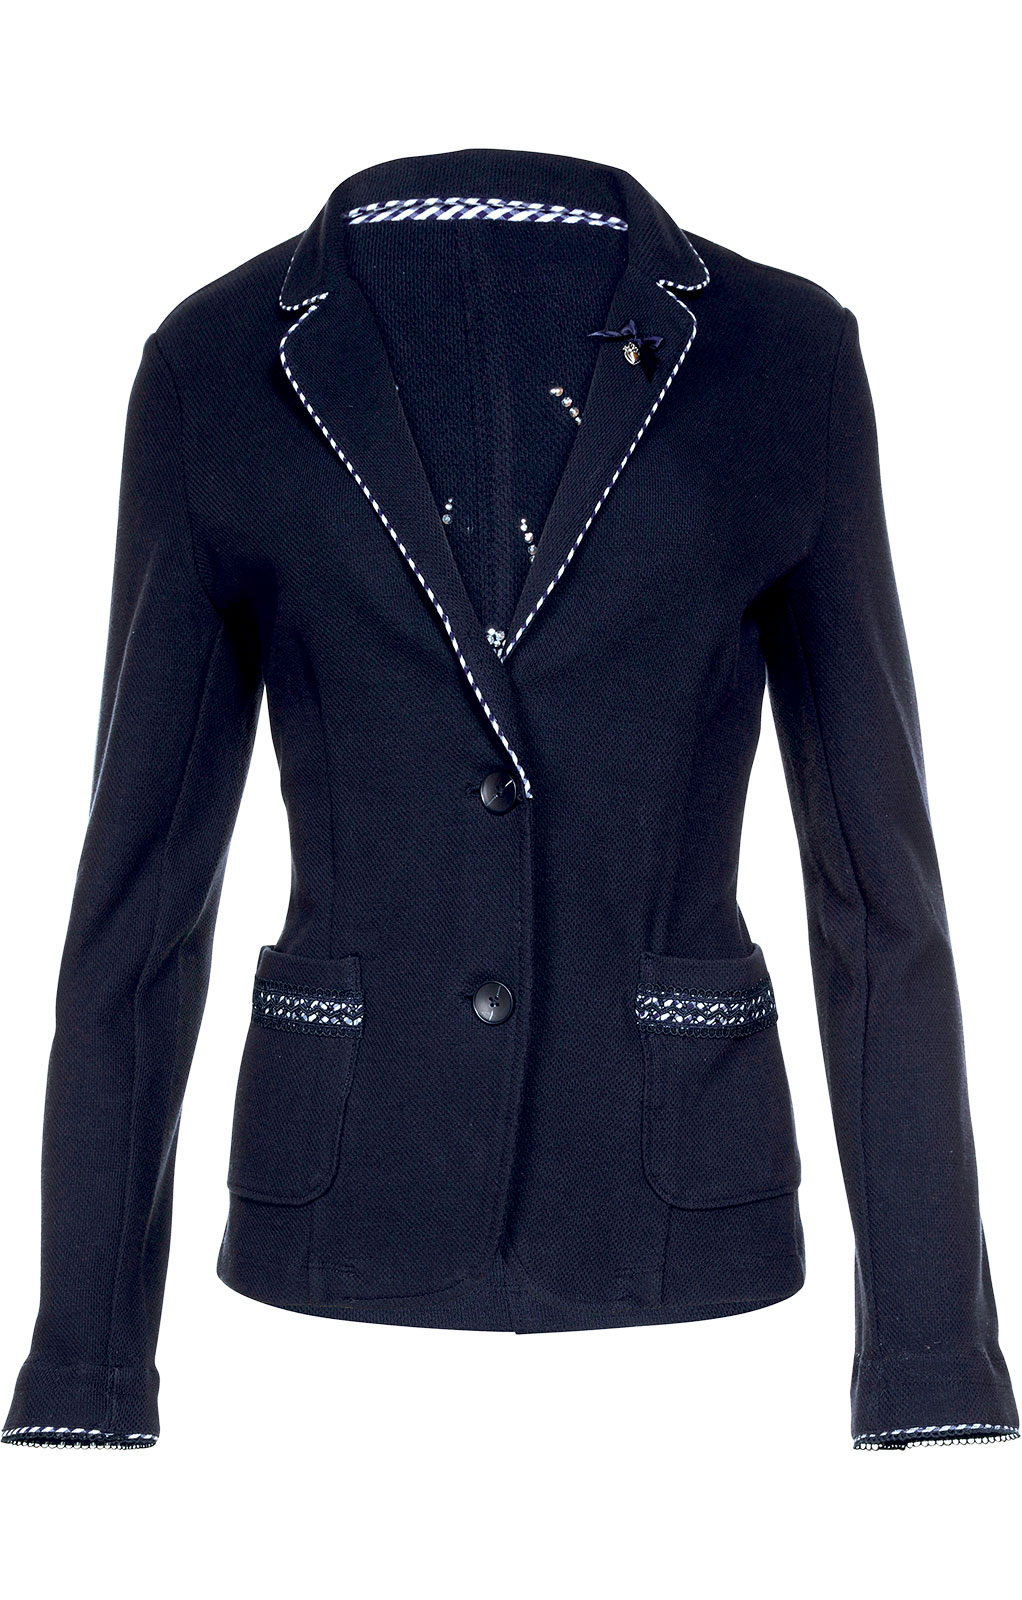 weitere Bilder von Traditional Jackets Blazer F33 - GUNDA darkblue